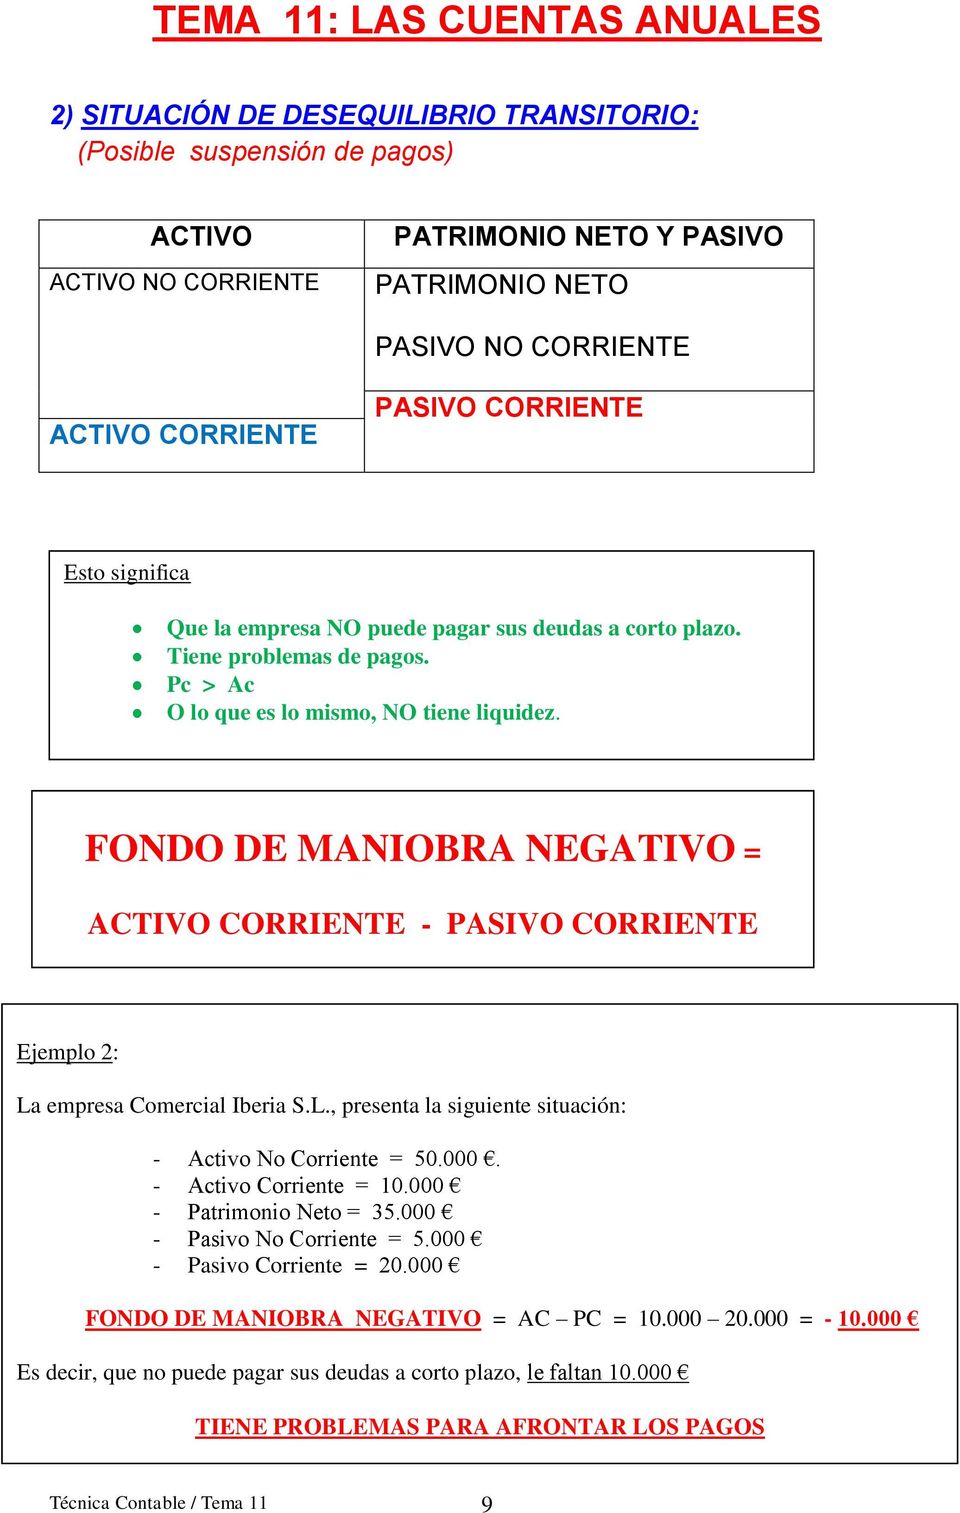 FONDO DE MANIOBRA NEGATIVO = CORRIENTE - PASIVO CORRIENTE Ejemplo 2: La empresa Comercial Iberia S.L., presenta la siguiente situación: - Activo No Corriente = 50.000. - Activo Corriente = 10.